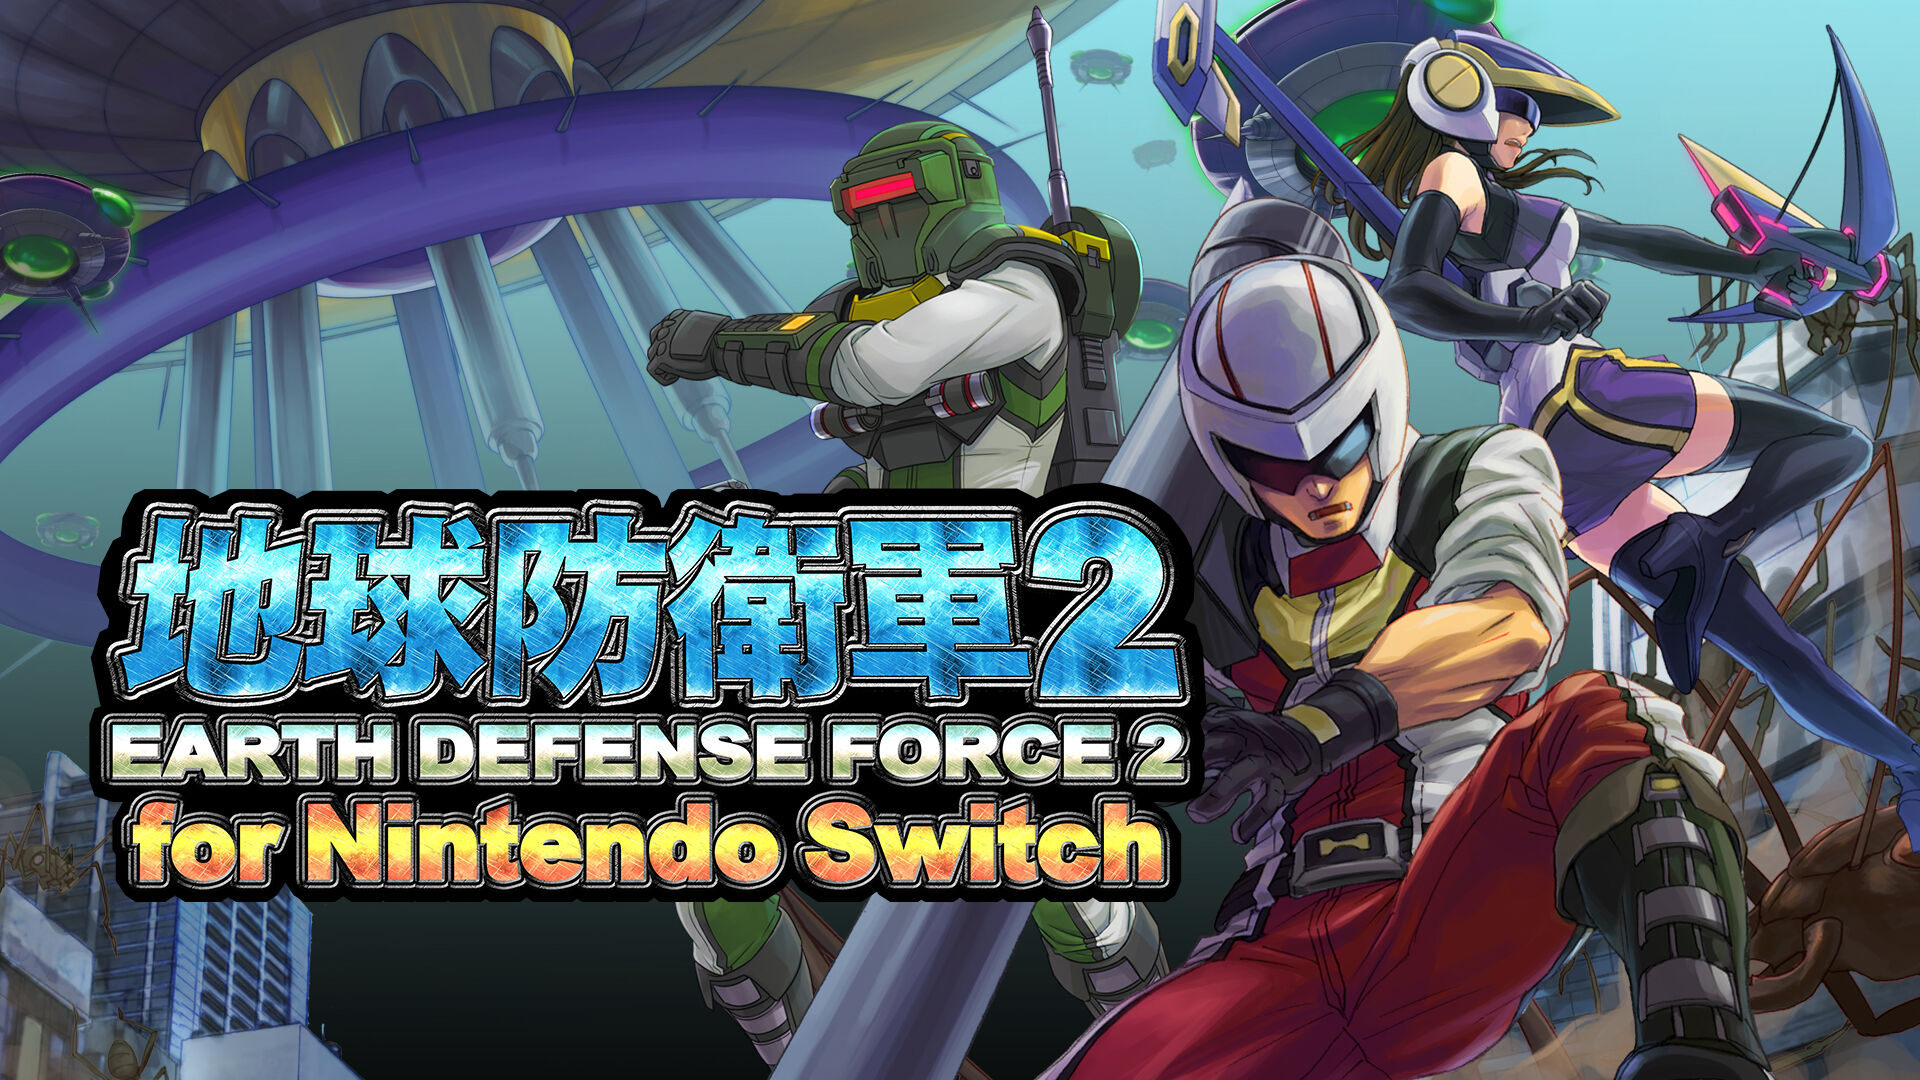 地球防衛軍２ for Nintendo Switch ダウンロード版 | My Nintendo 